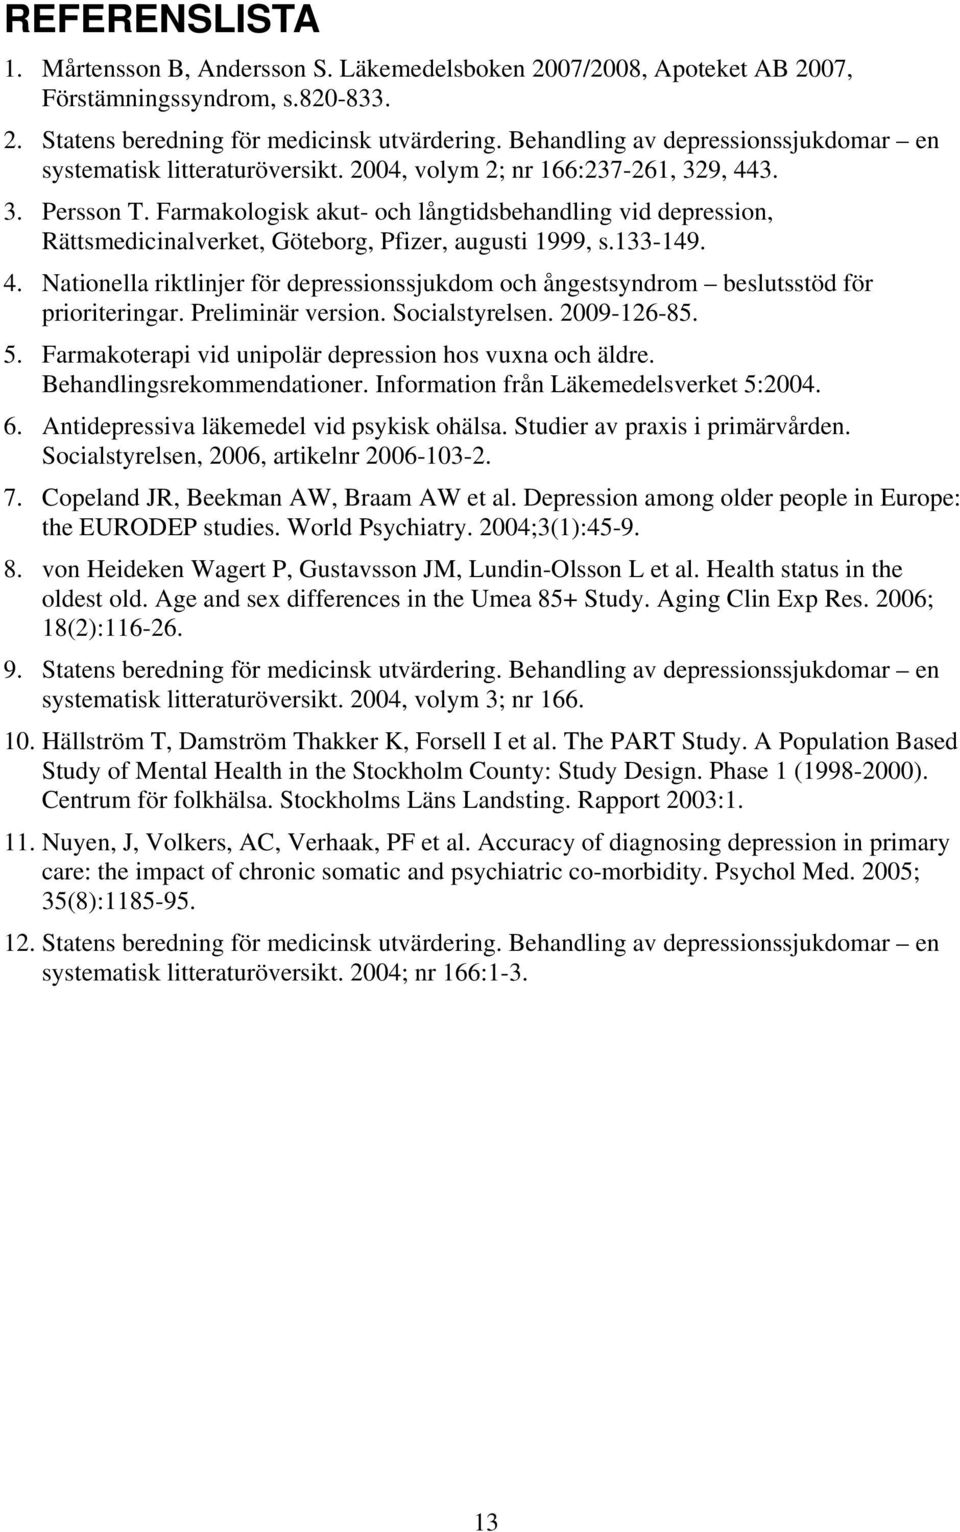 Farmakologisk akut- och långtidsbehandling vid depression, Rättsmedicinalverket, Göteborg, Pfizer, augusti 1999, s.133-149. 4.